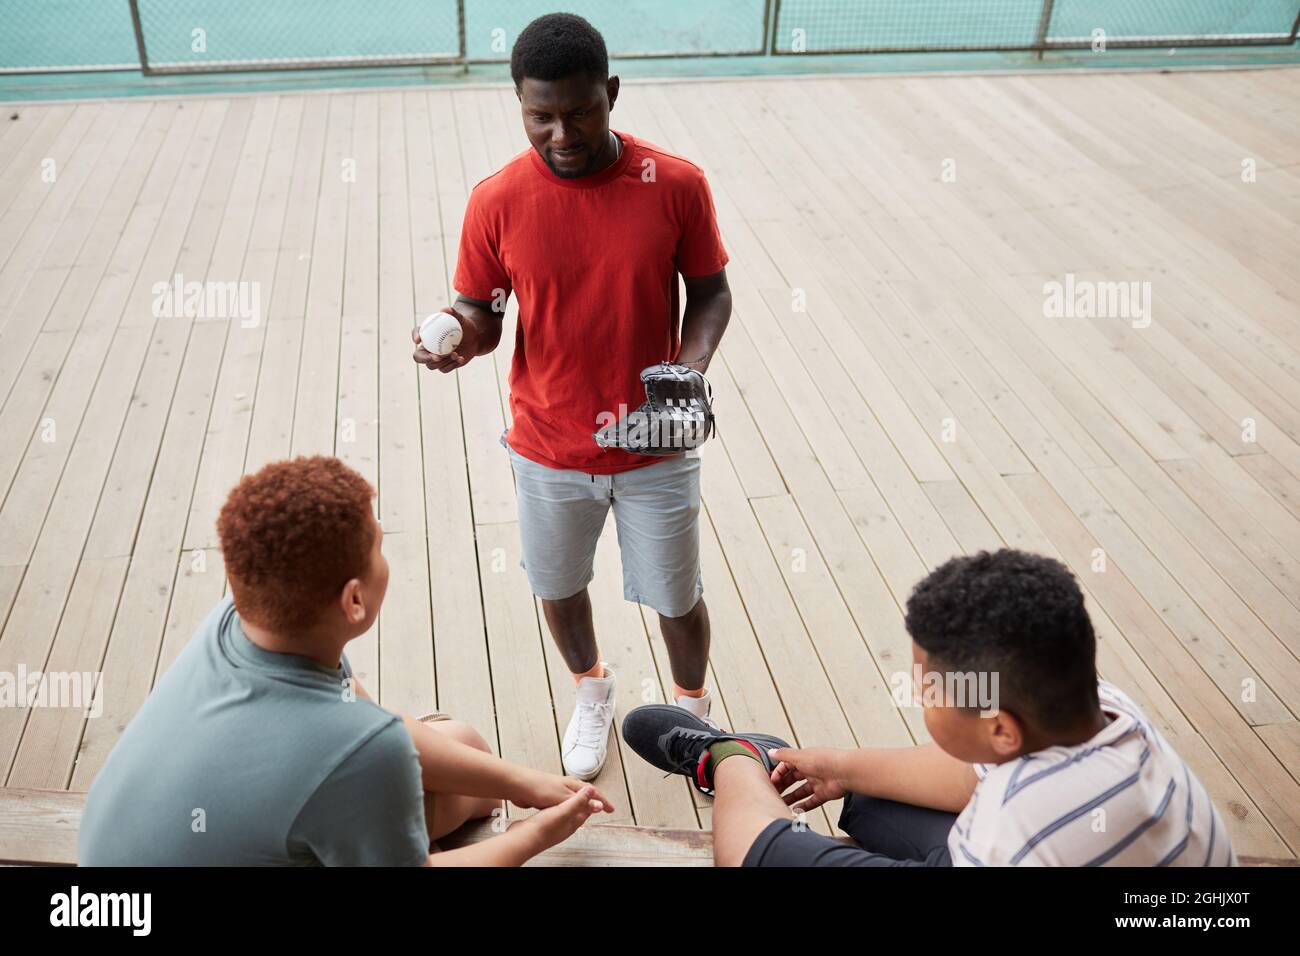 Junger afroamerikanischer Trainer in orangefarbenem T-Shirt hält Ball und Baseballhandschuh und erklärt Jungen die Pitching-Technik Stockfoto